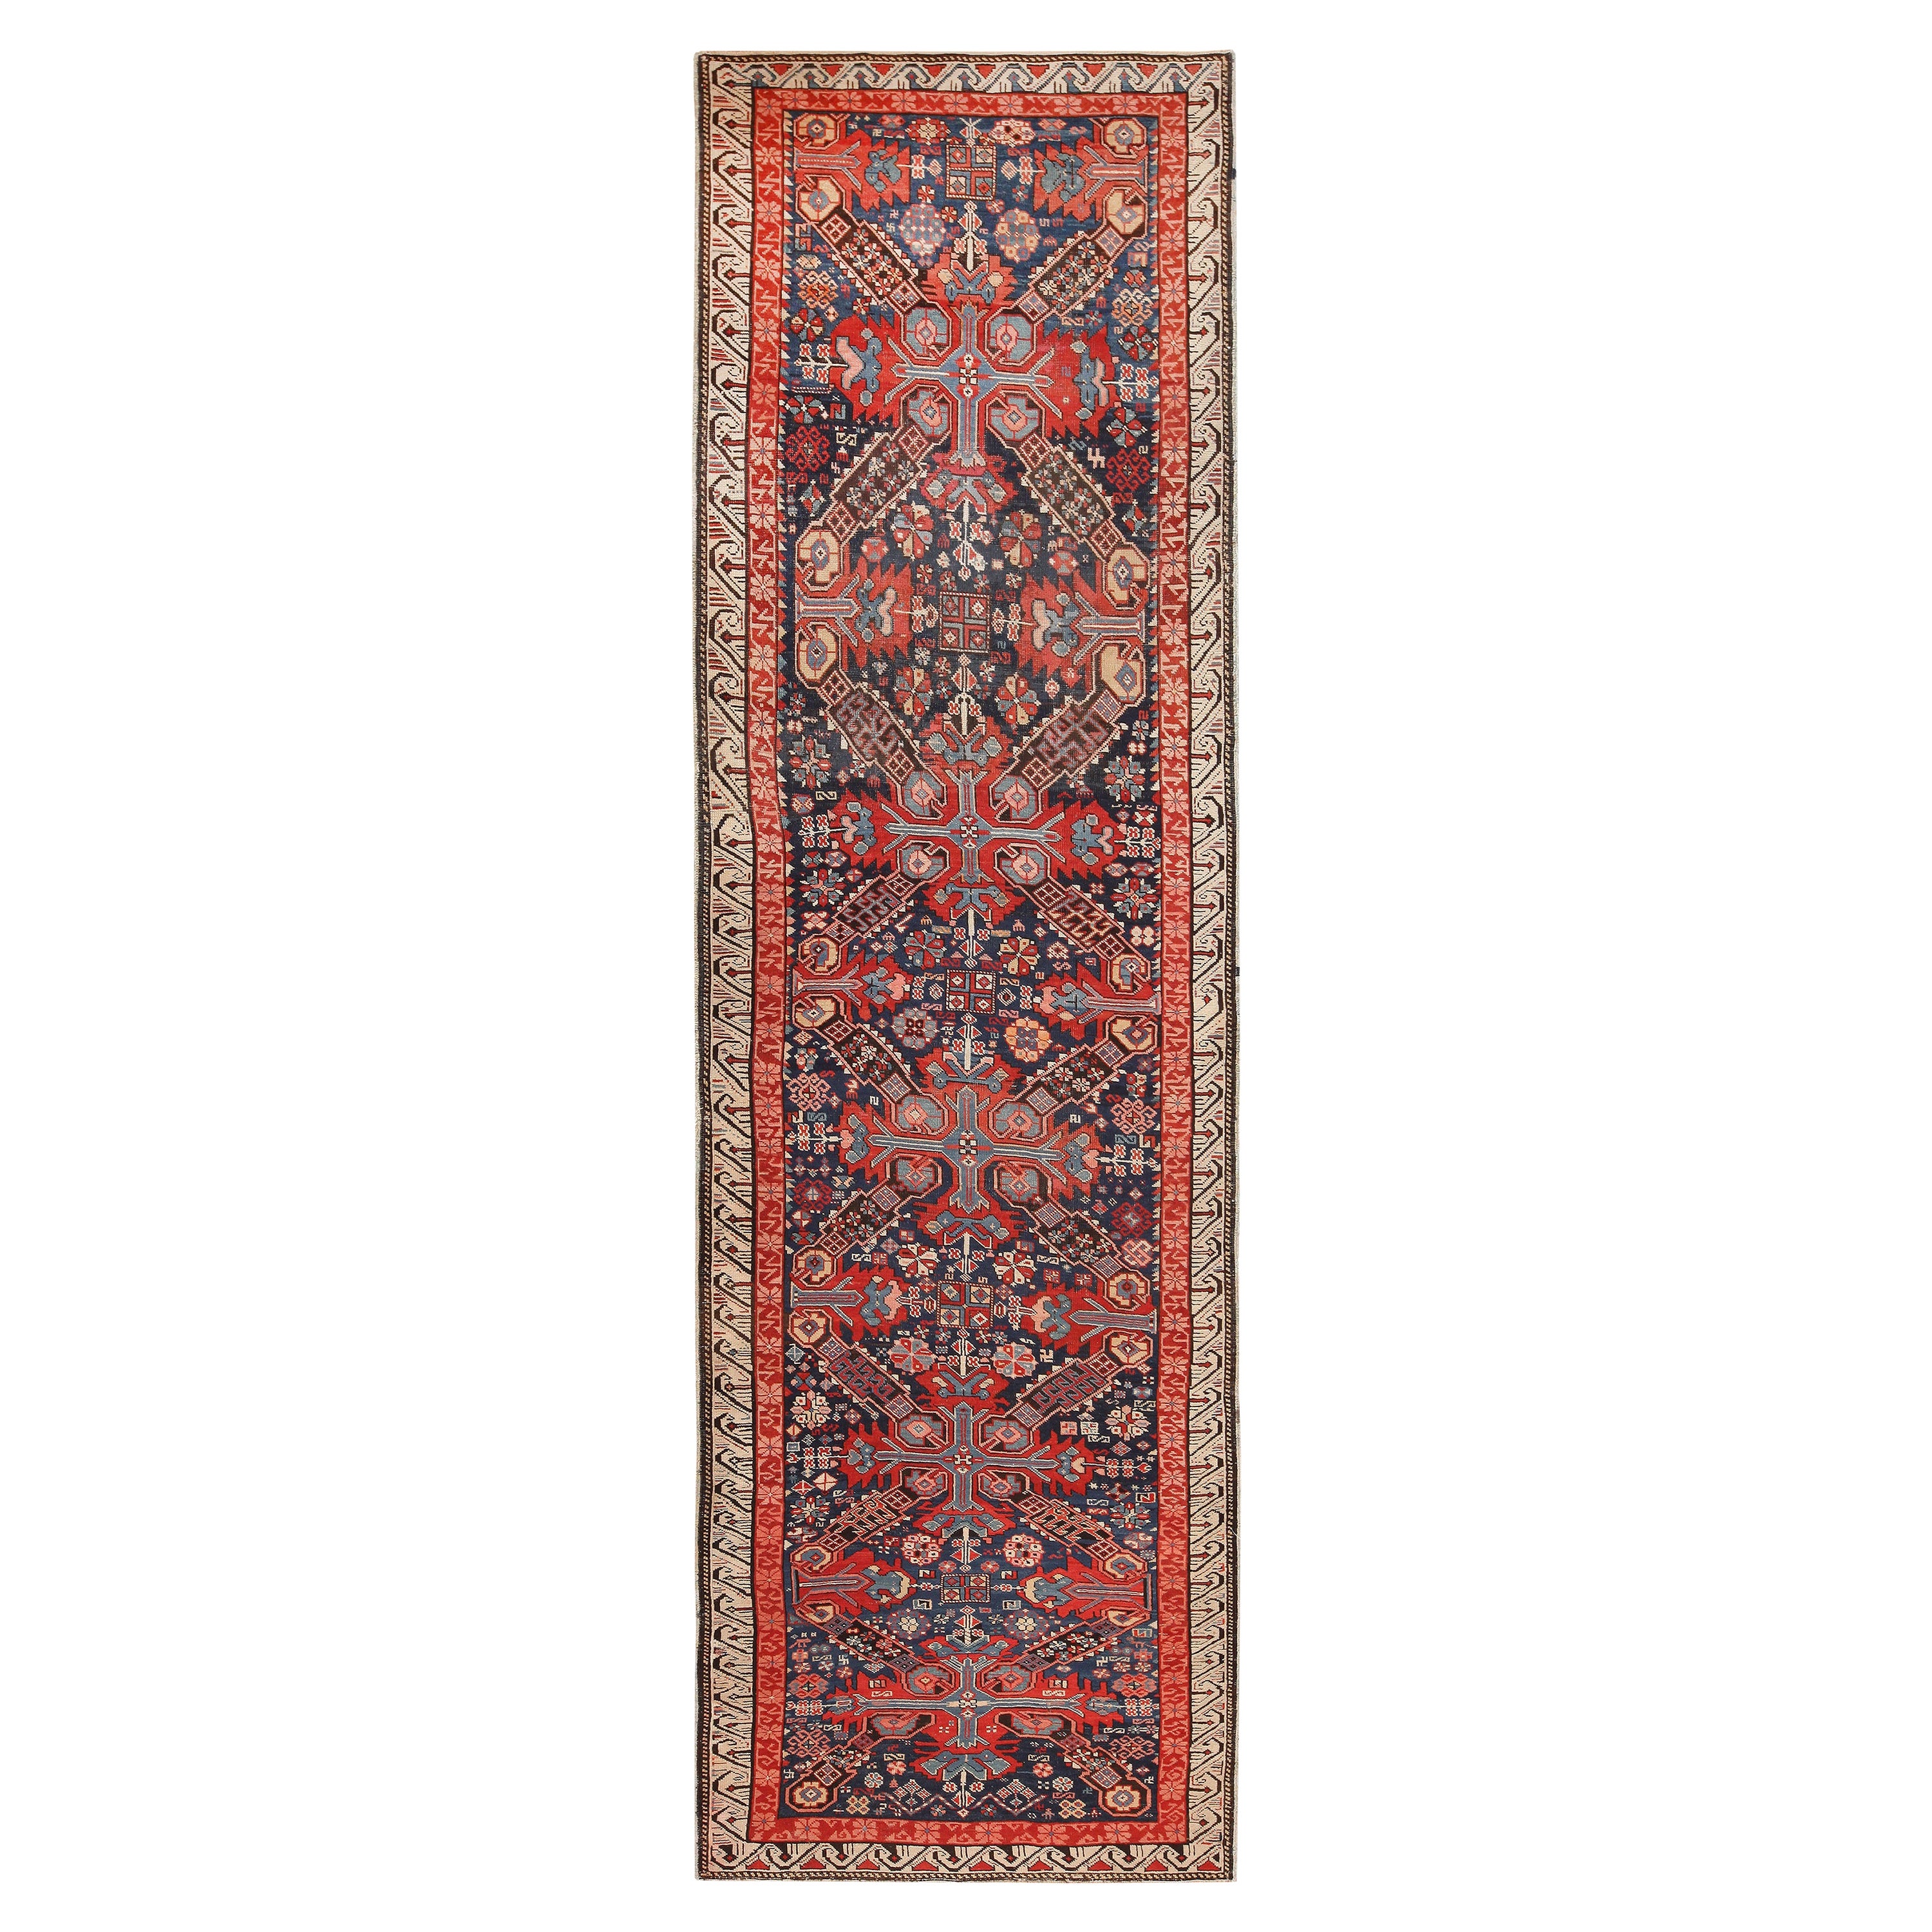 Magnifique tapis caucasien séychour tribal ancien de 3'6" x 11'